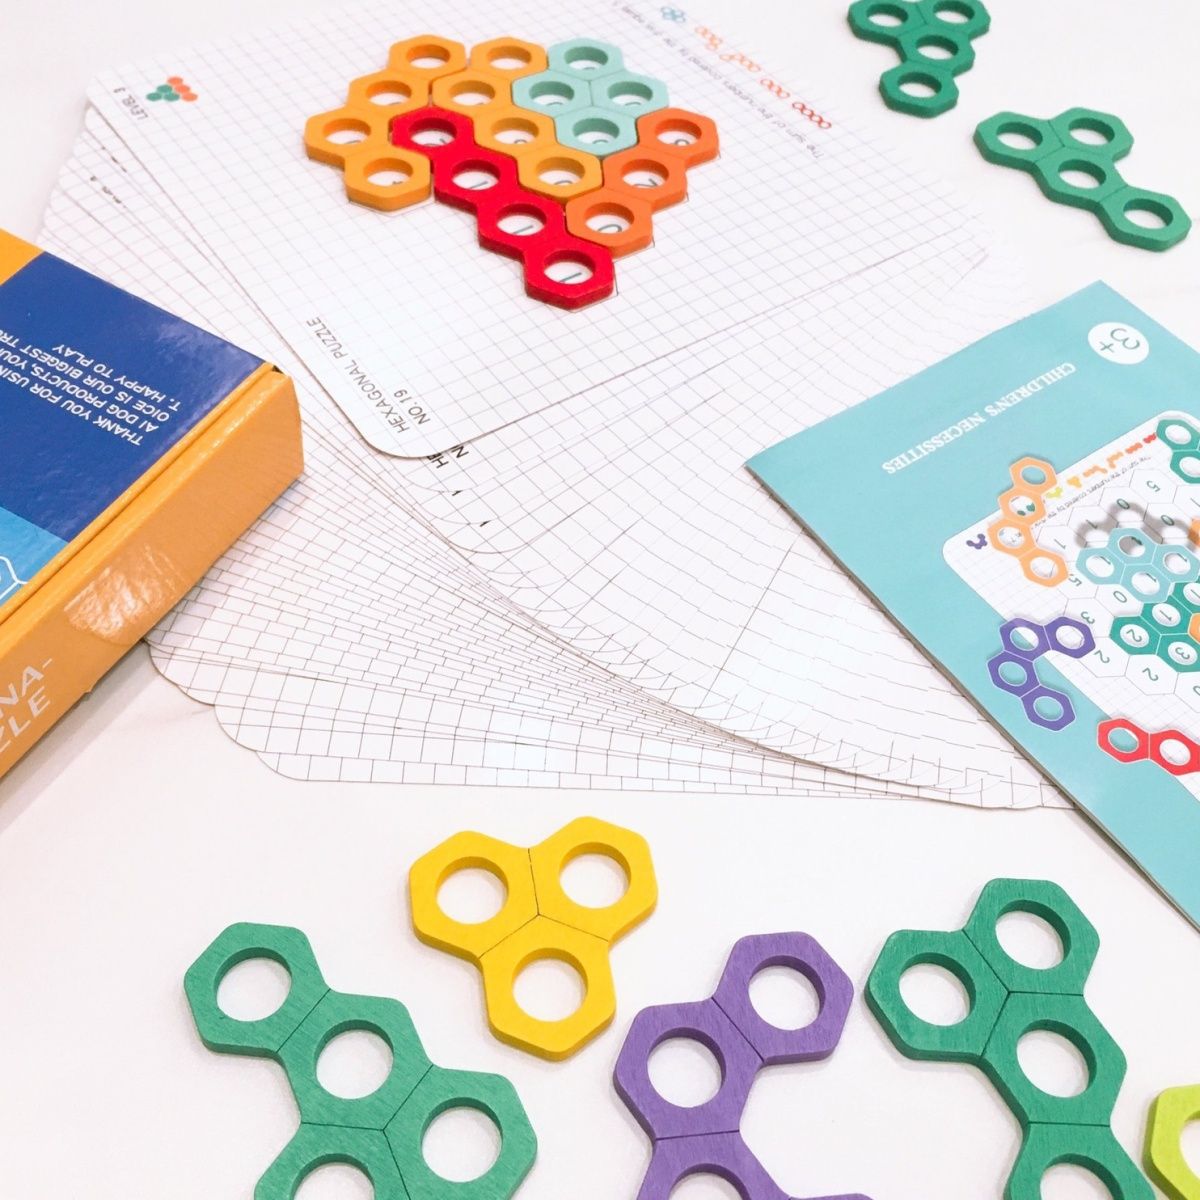 蜂窝趣味百变拼图儿童逻辑思维数字配对六边形桌游儿童益智玩具